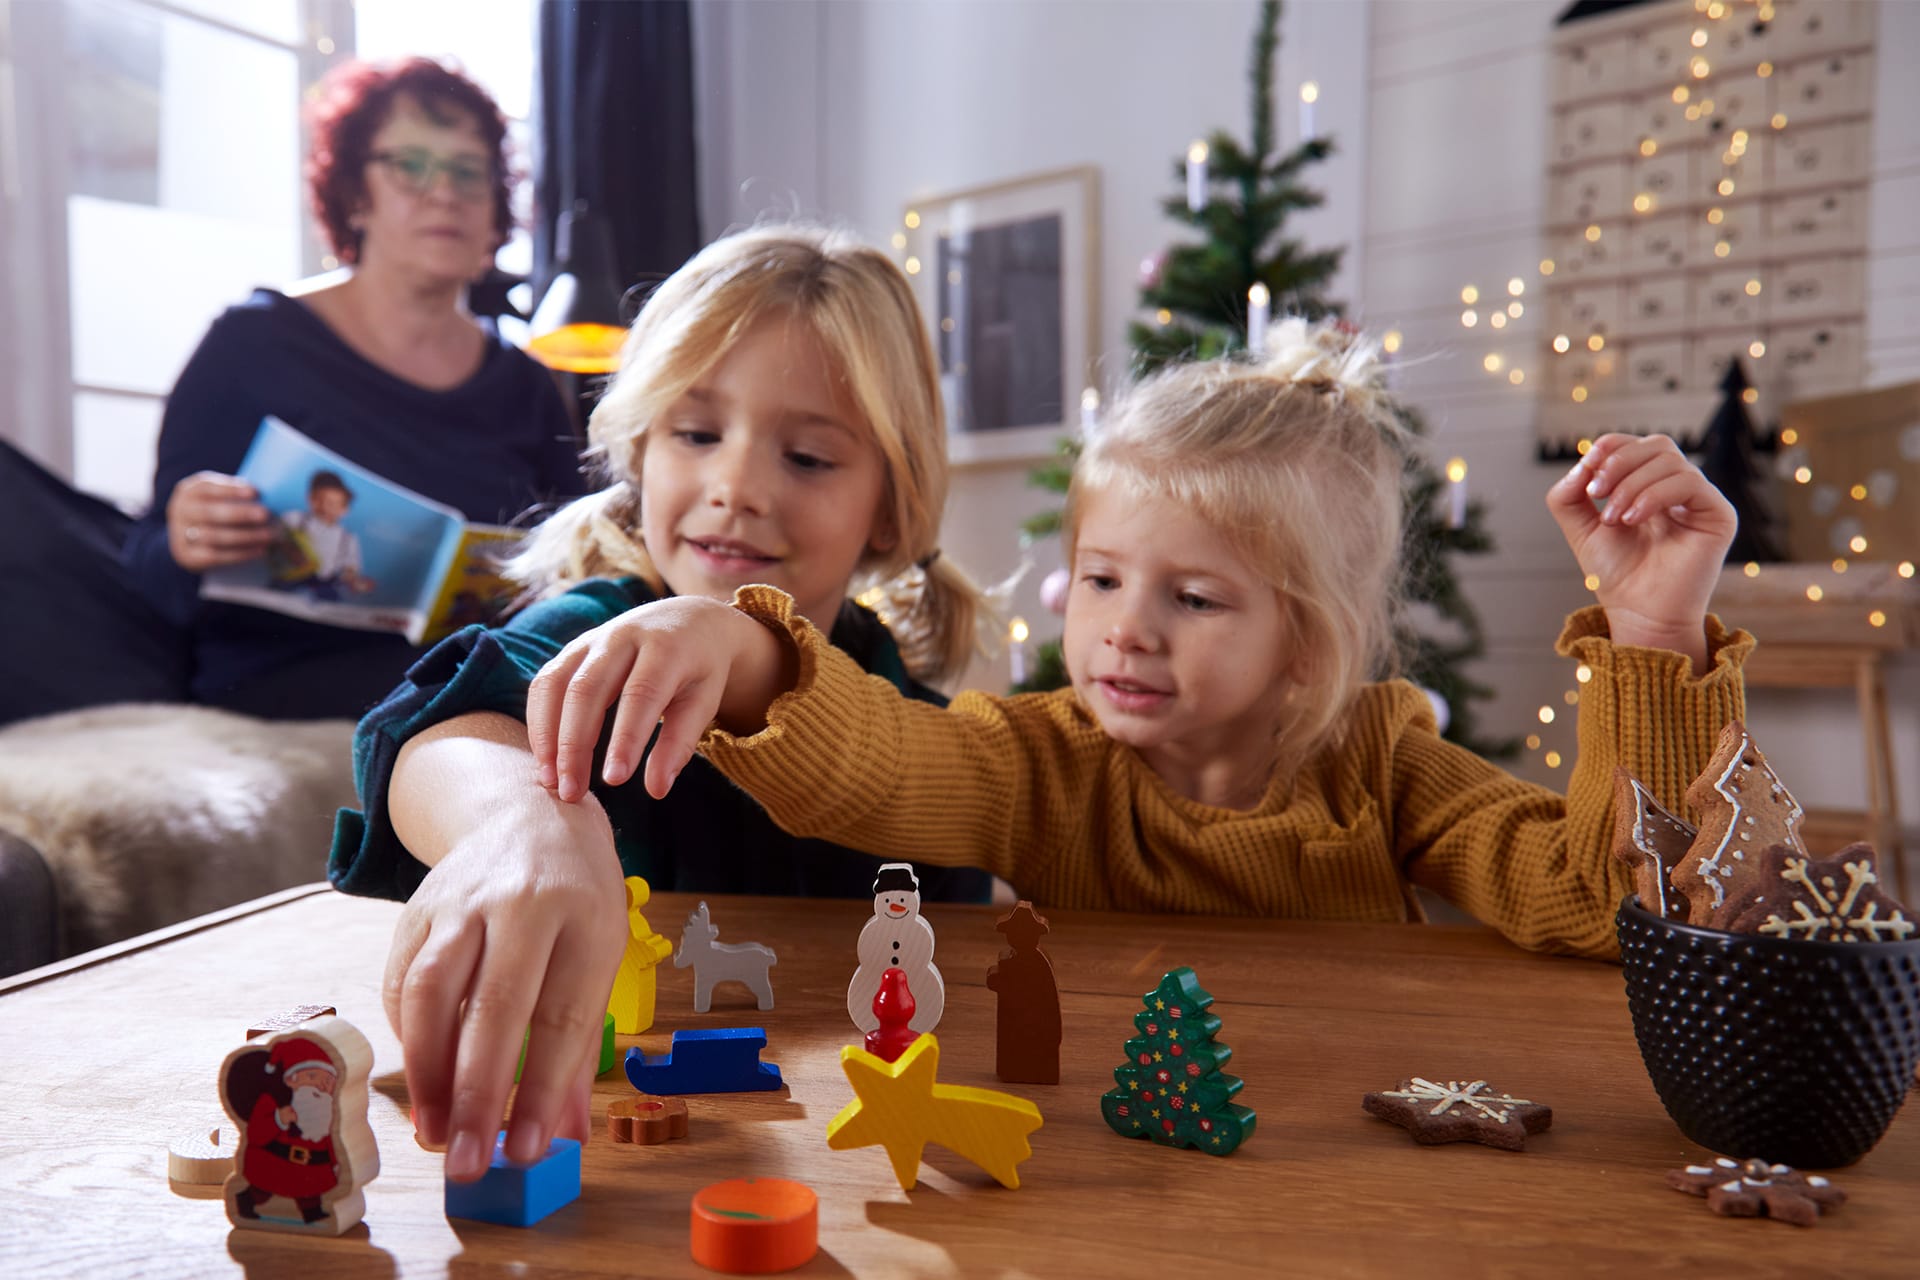  Exklusive Geschenketipps von HABA für das Weihnachtsfest | 2 Mädchen spielen mit Krippenfiguren. Frau liest eine Zeitschrift